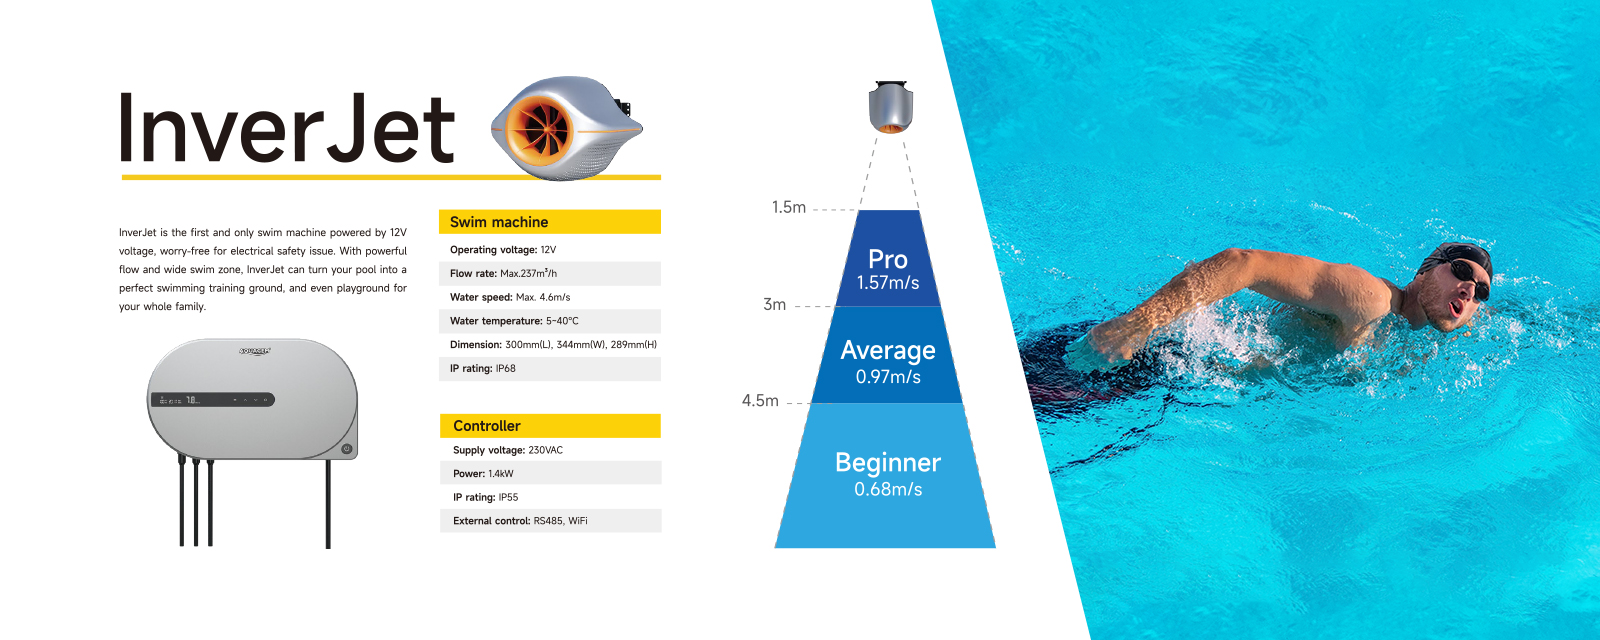 Mașină de curent pentru piscină inverjet - First & Only 12VAparat de înot